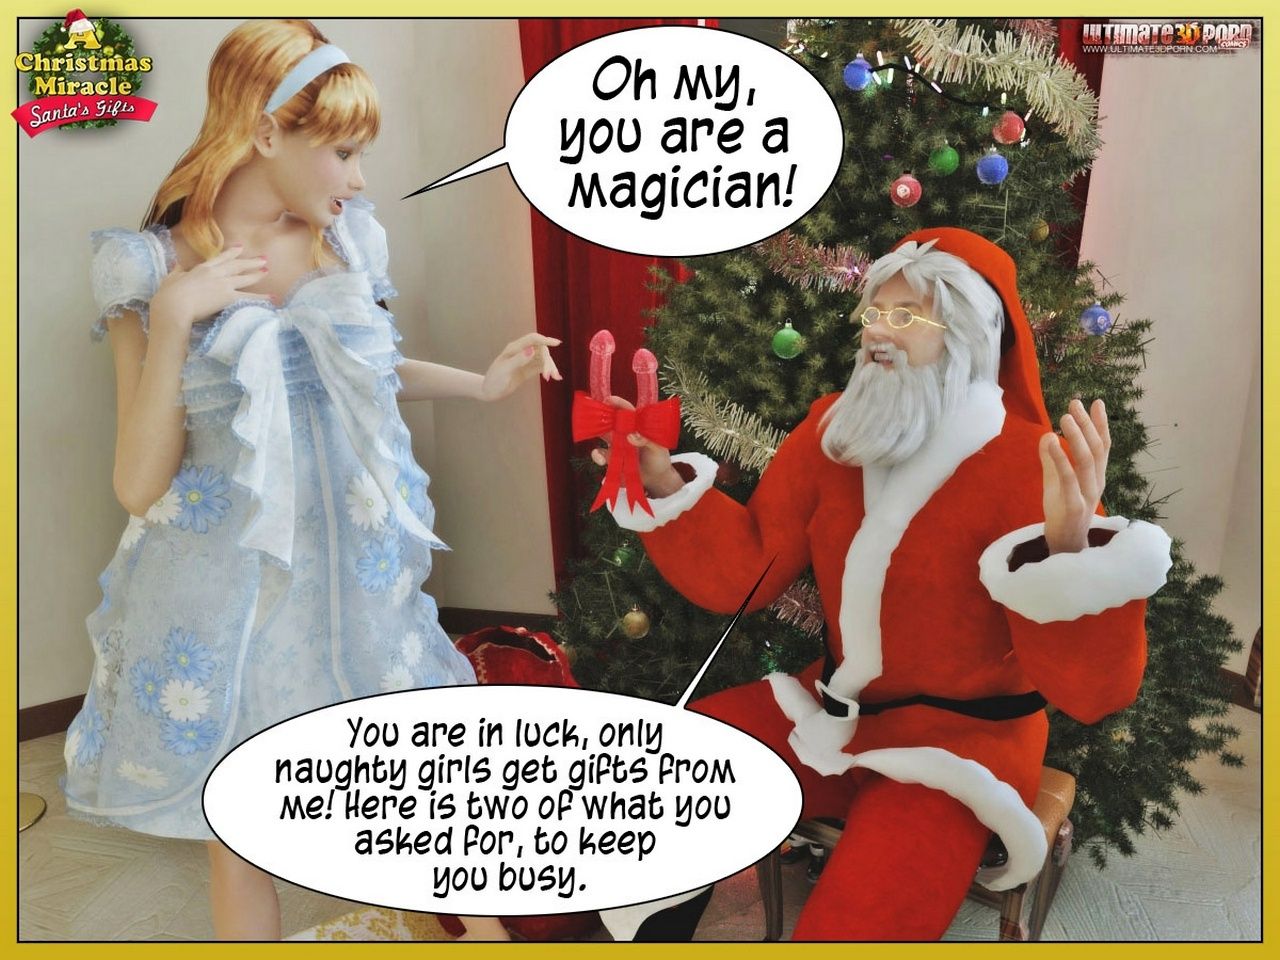 Un la navidad milagro 2 - Santas regalo - Parte 2